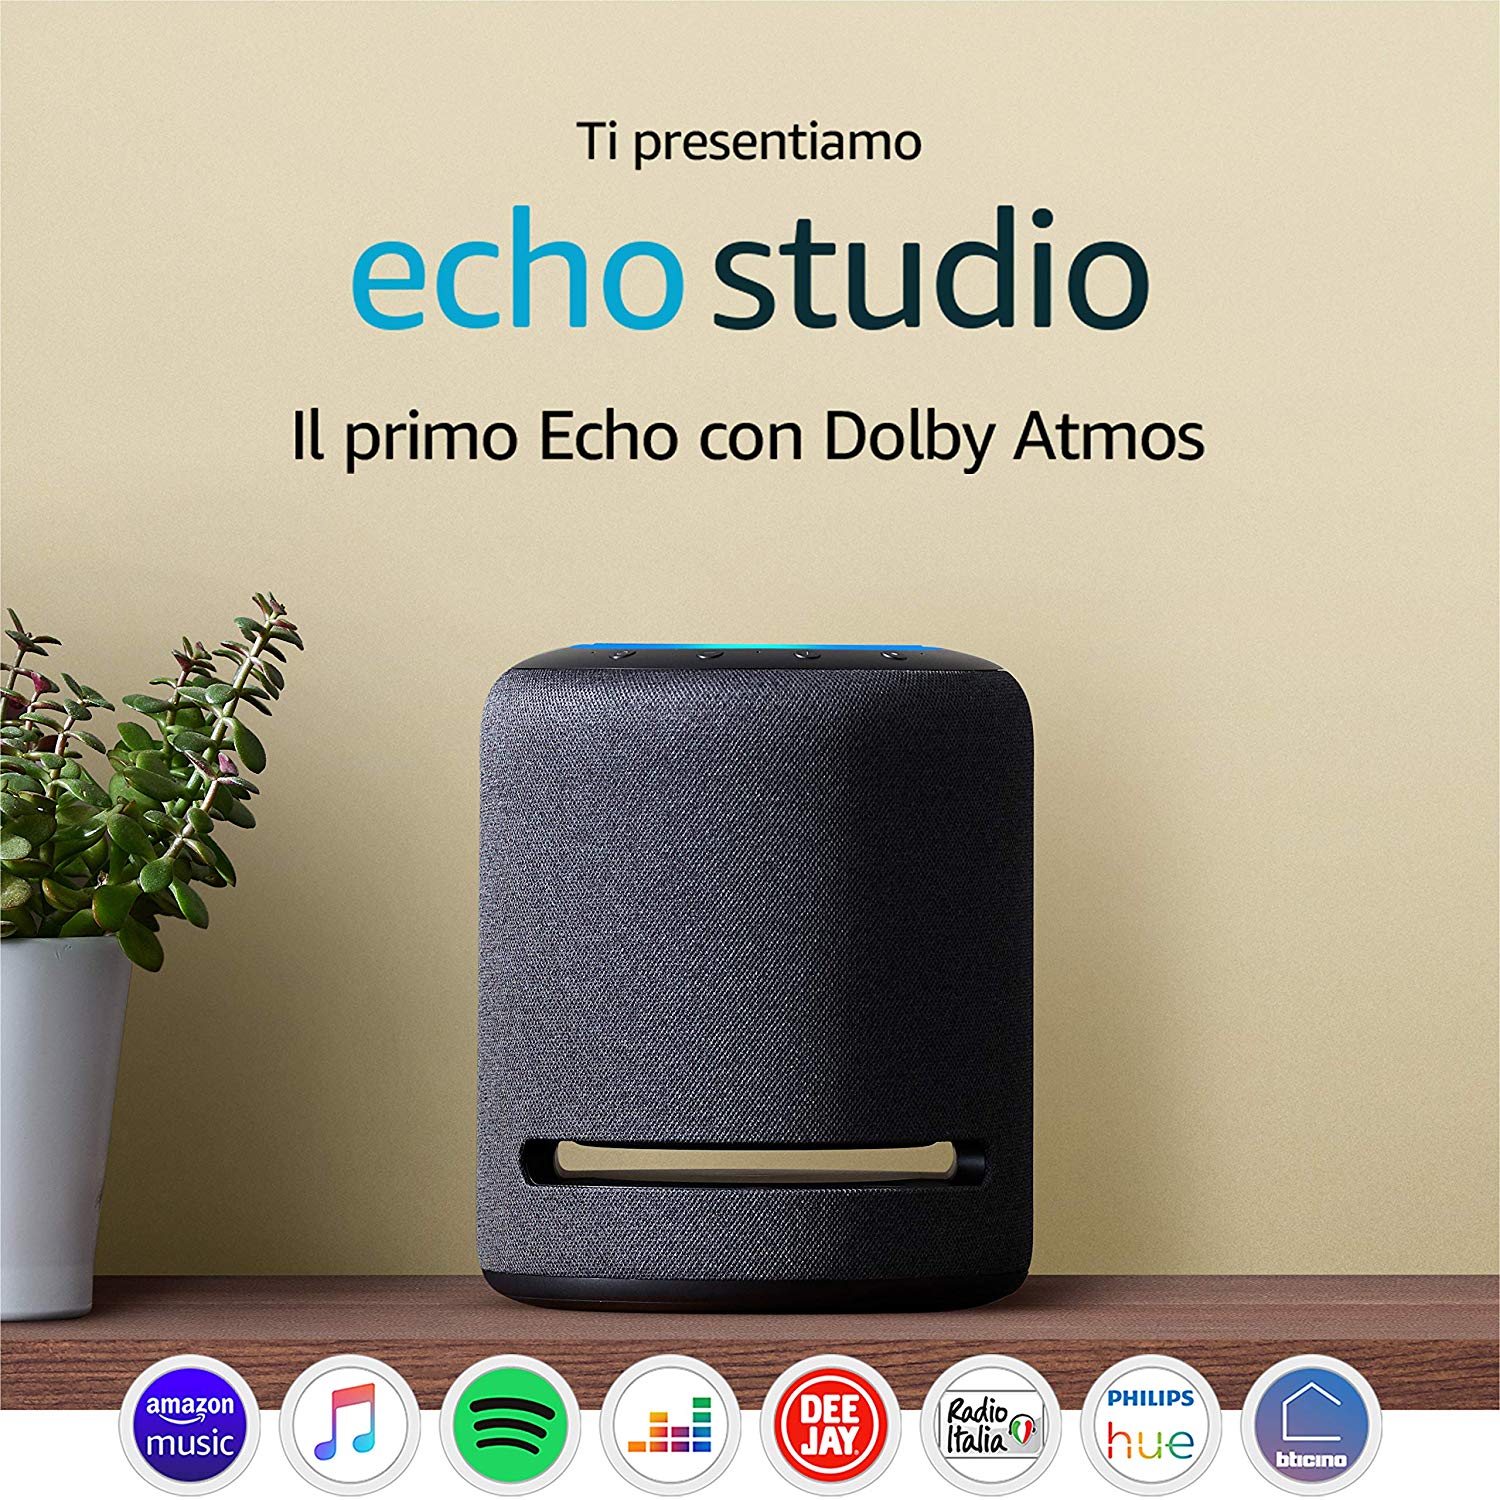 Echo Studio - Altoparlante intelligente con audio Hi-Fi e Alexa